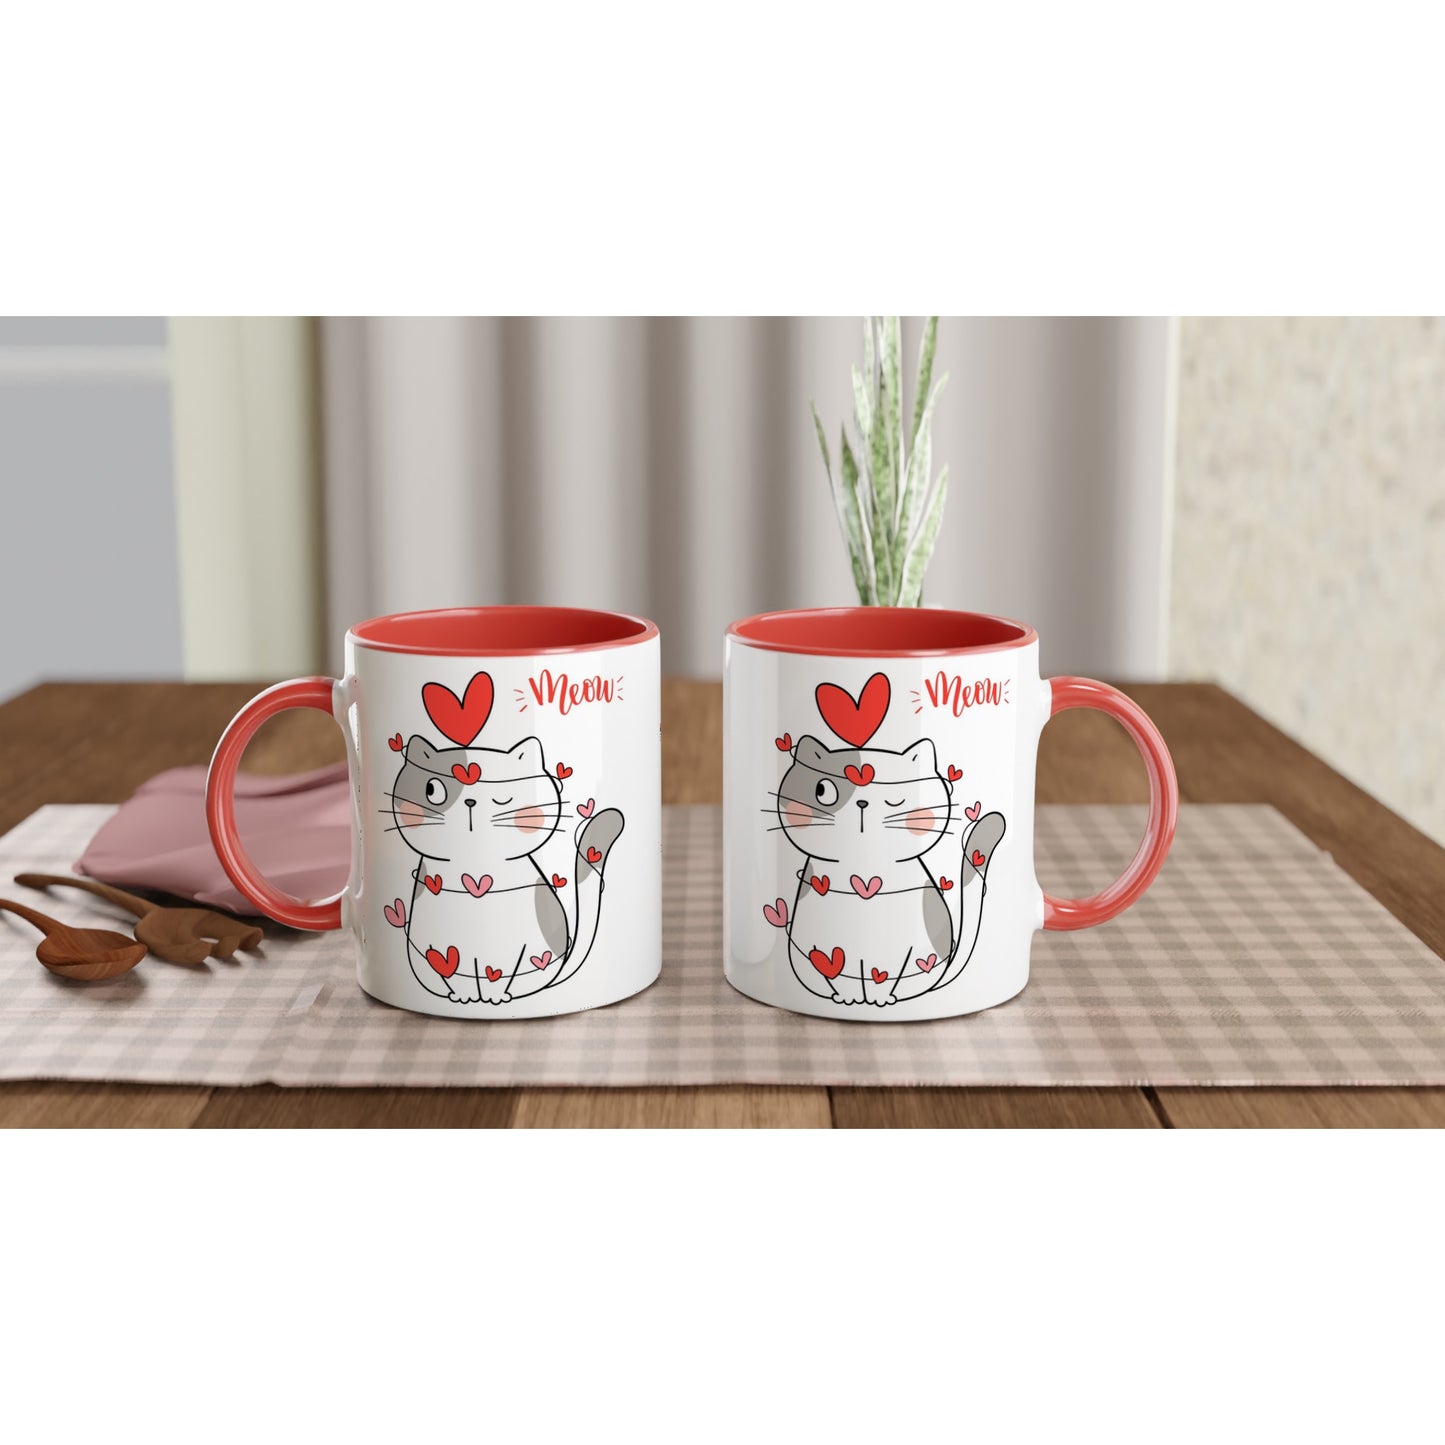 Cat Heart Meow - White 11oz Ceramic Mug with Color Inside Colour 11oz Mug animal Love